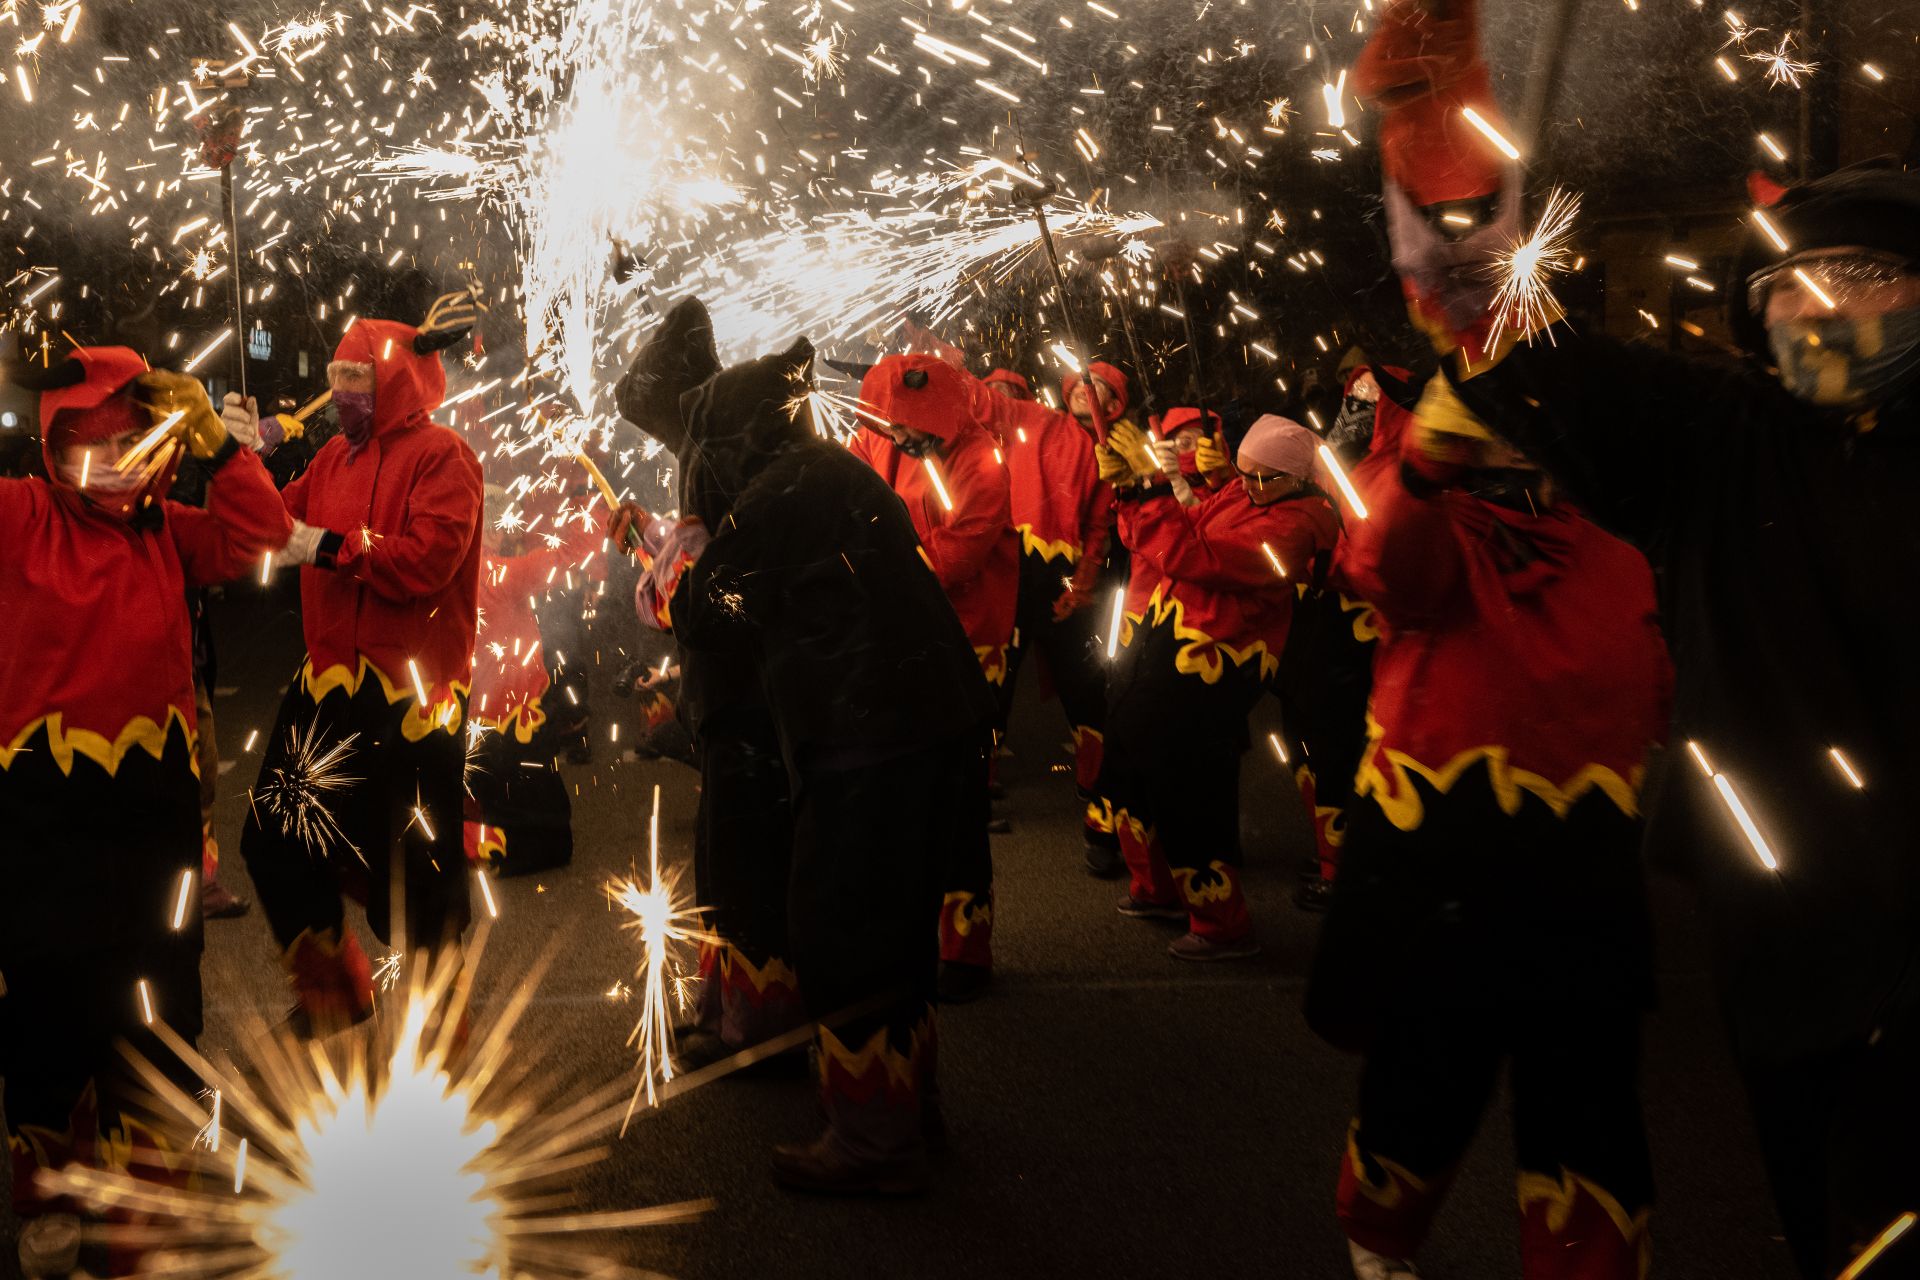  "Correfoc" е зрелищен каталунски фестивал от 12-ти век. Зрителите се опитват да се доближат възможно най-близо до дяволите, бягайки от огъня. Снимката е на Дейвид Рамос. 